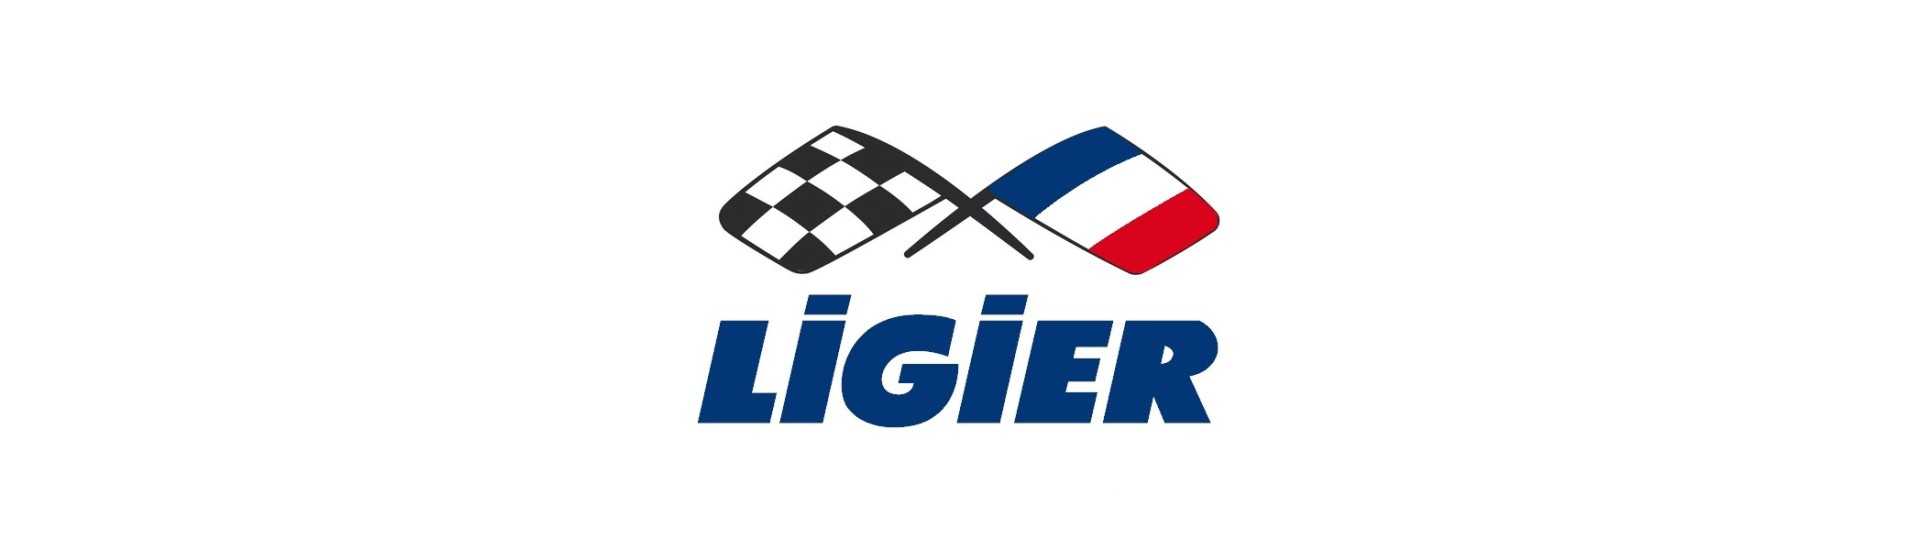 Libro de mantenimiento al mejor precio para un coche sin carnet Ligier